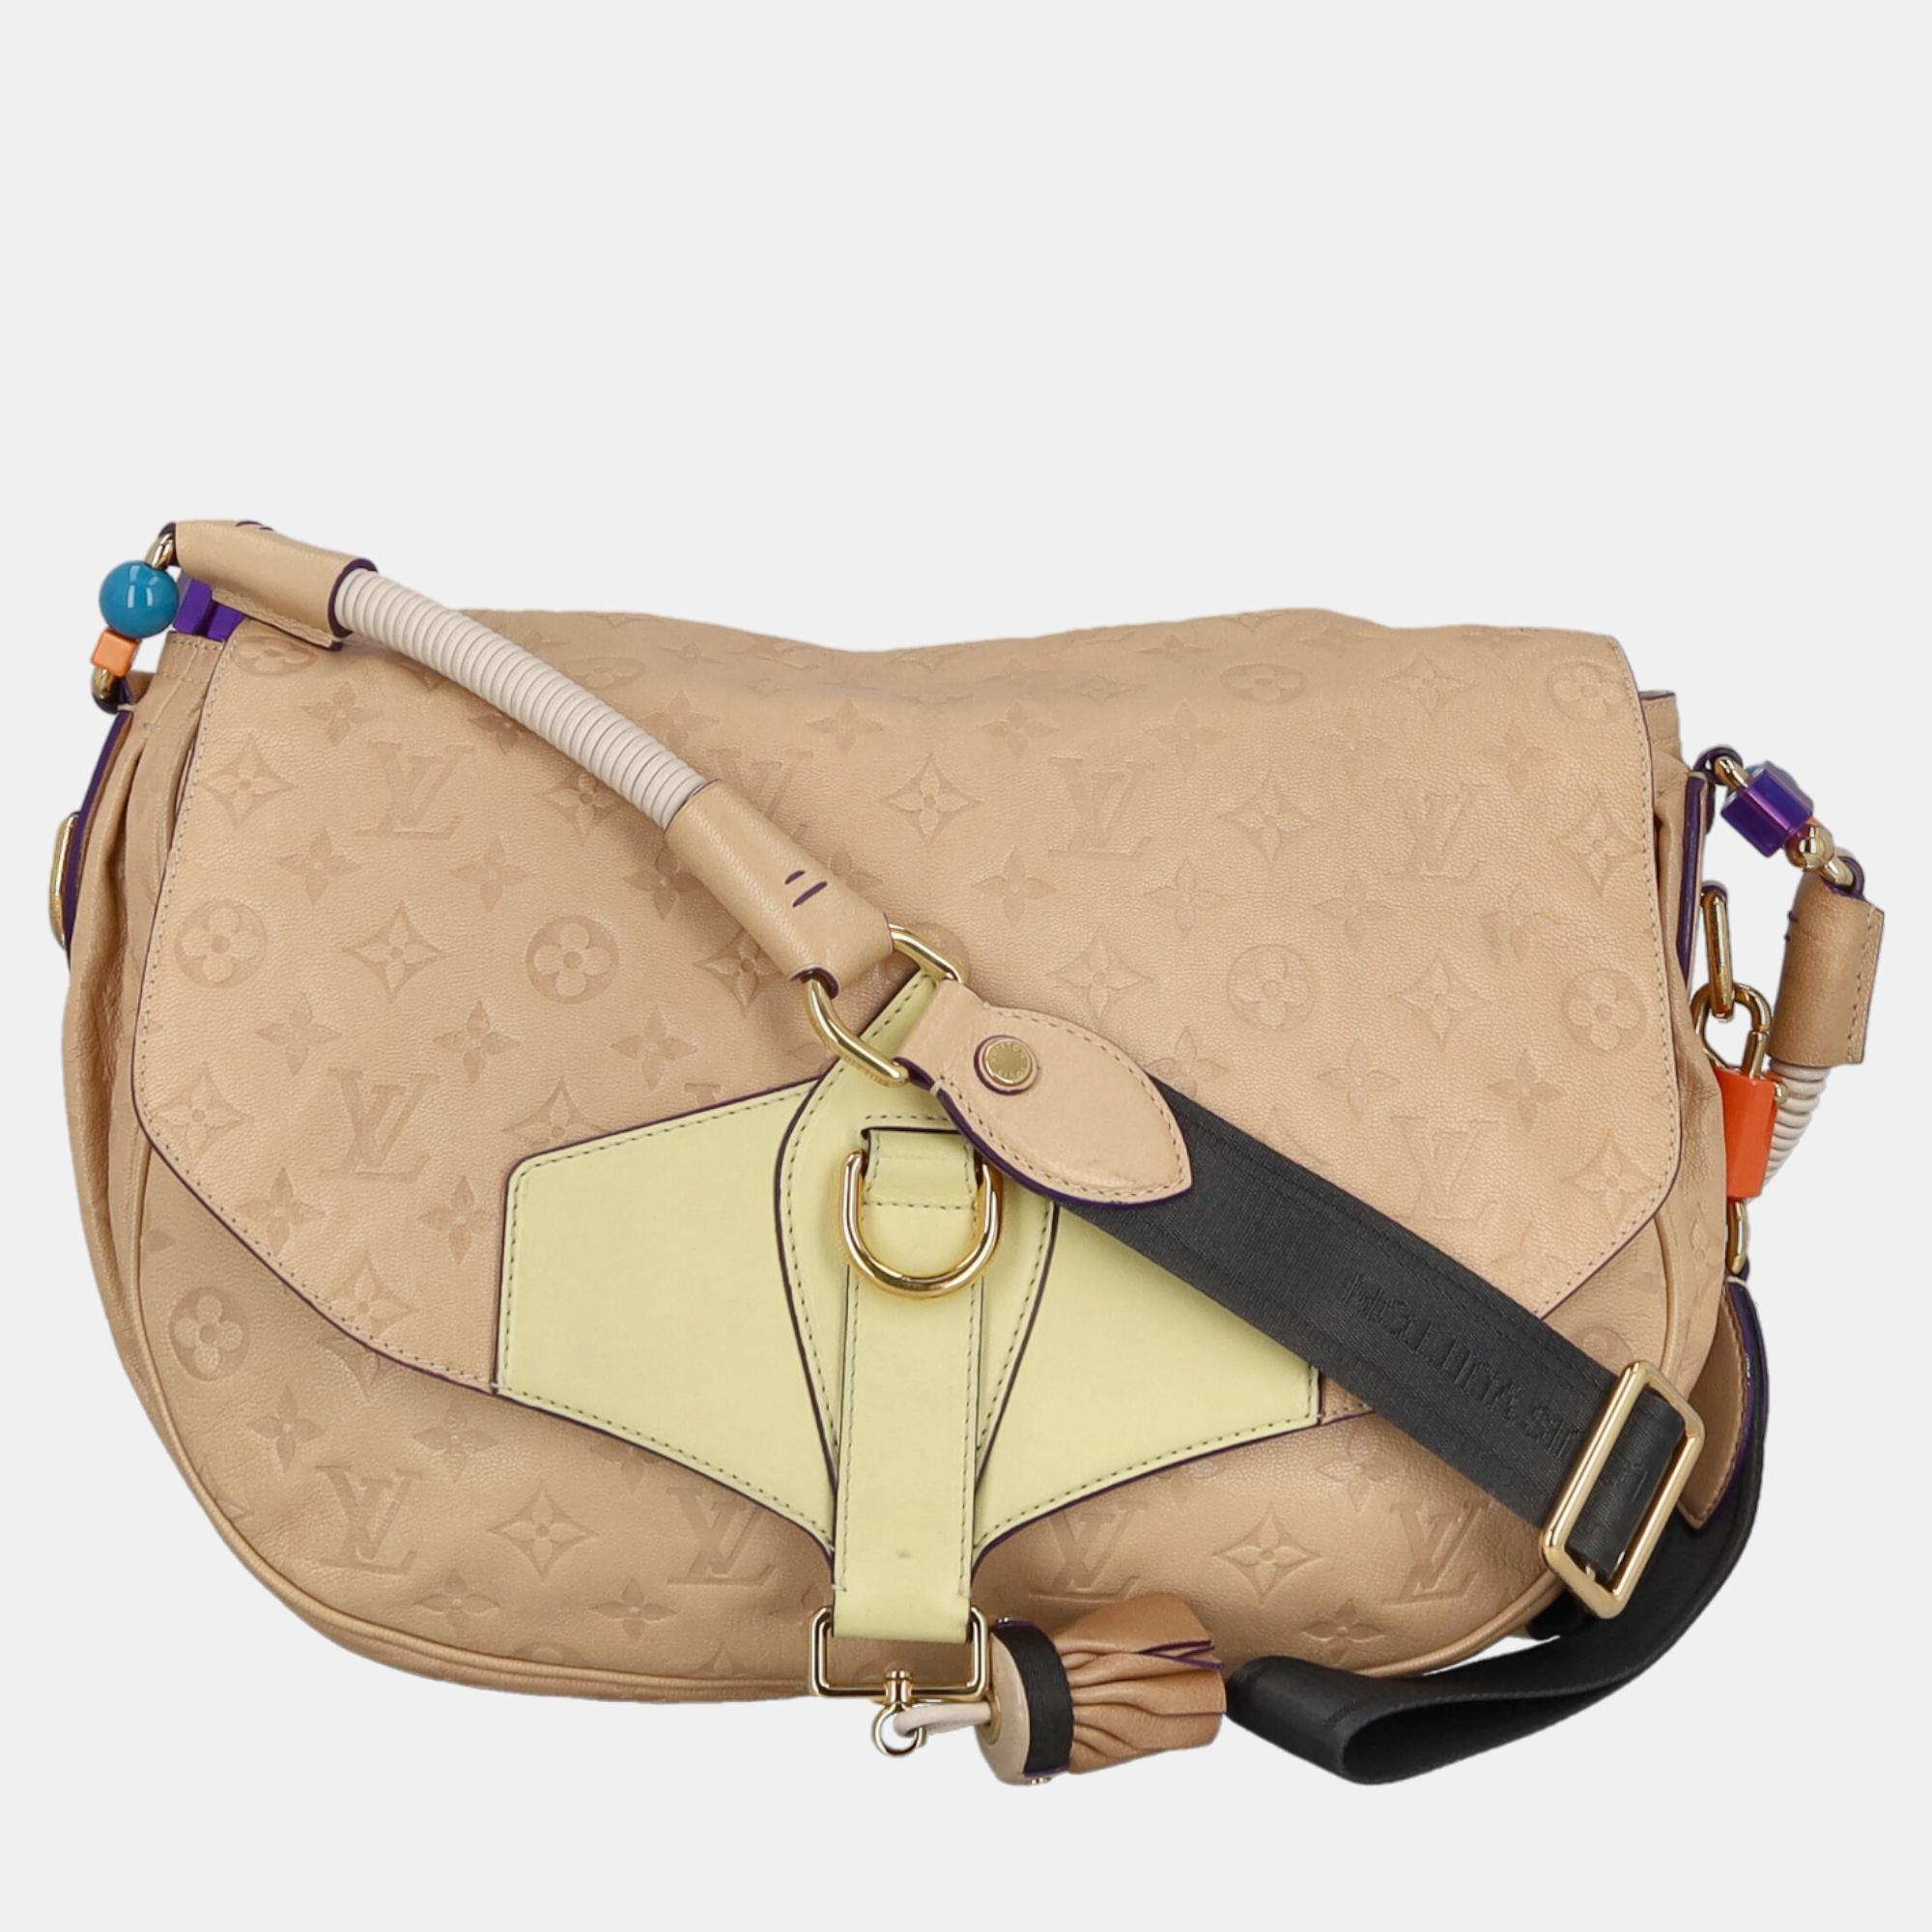 Louis Vuitton  Women's Leather Cross Body Bag - Beige - One Size